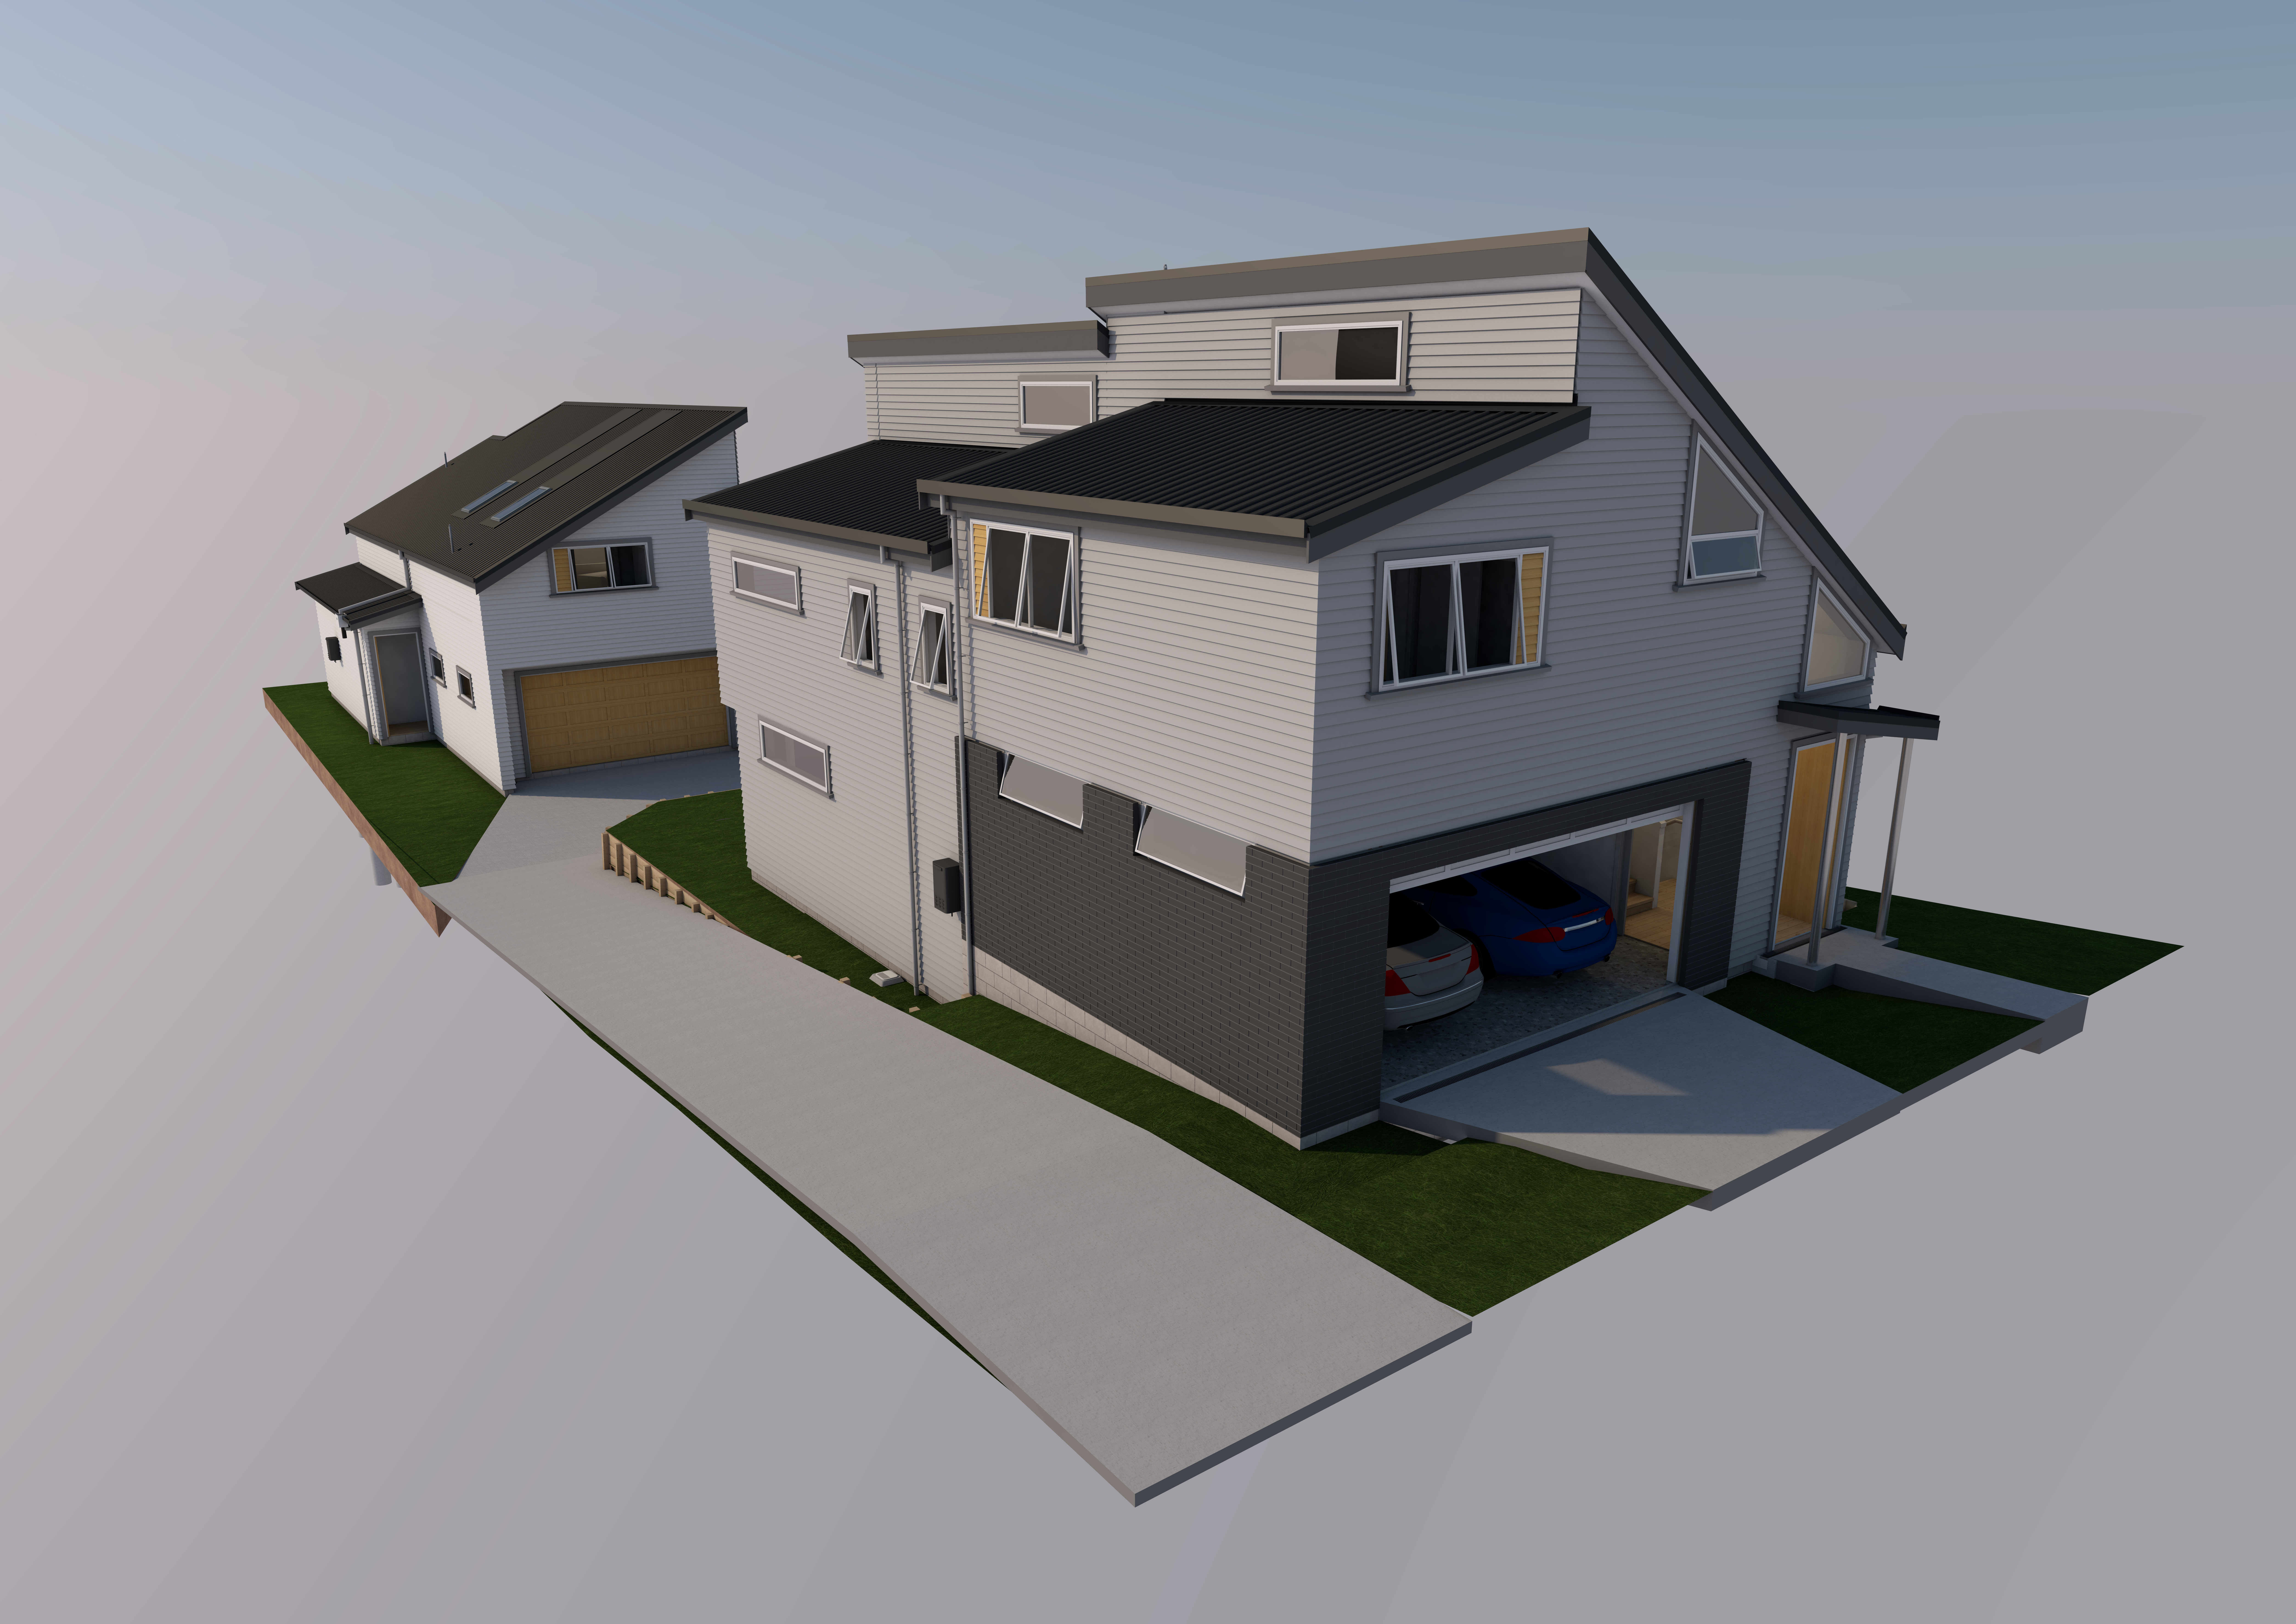 Auckland Housing Development